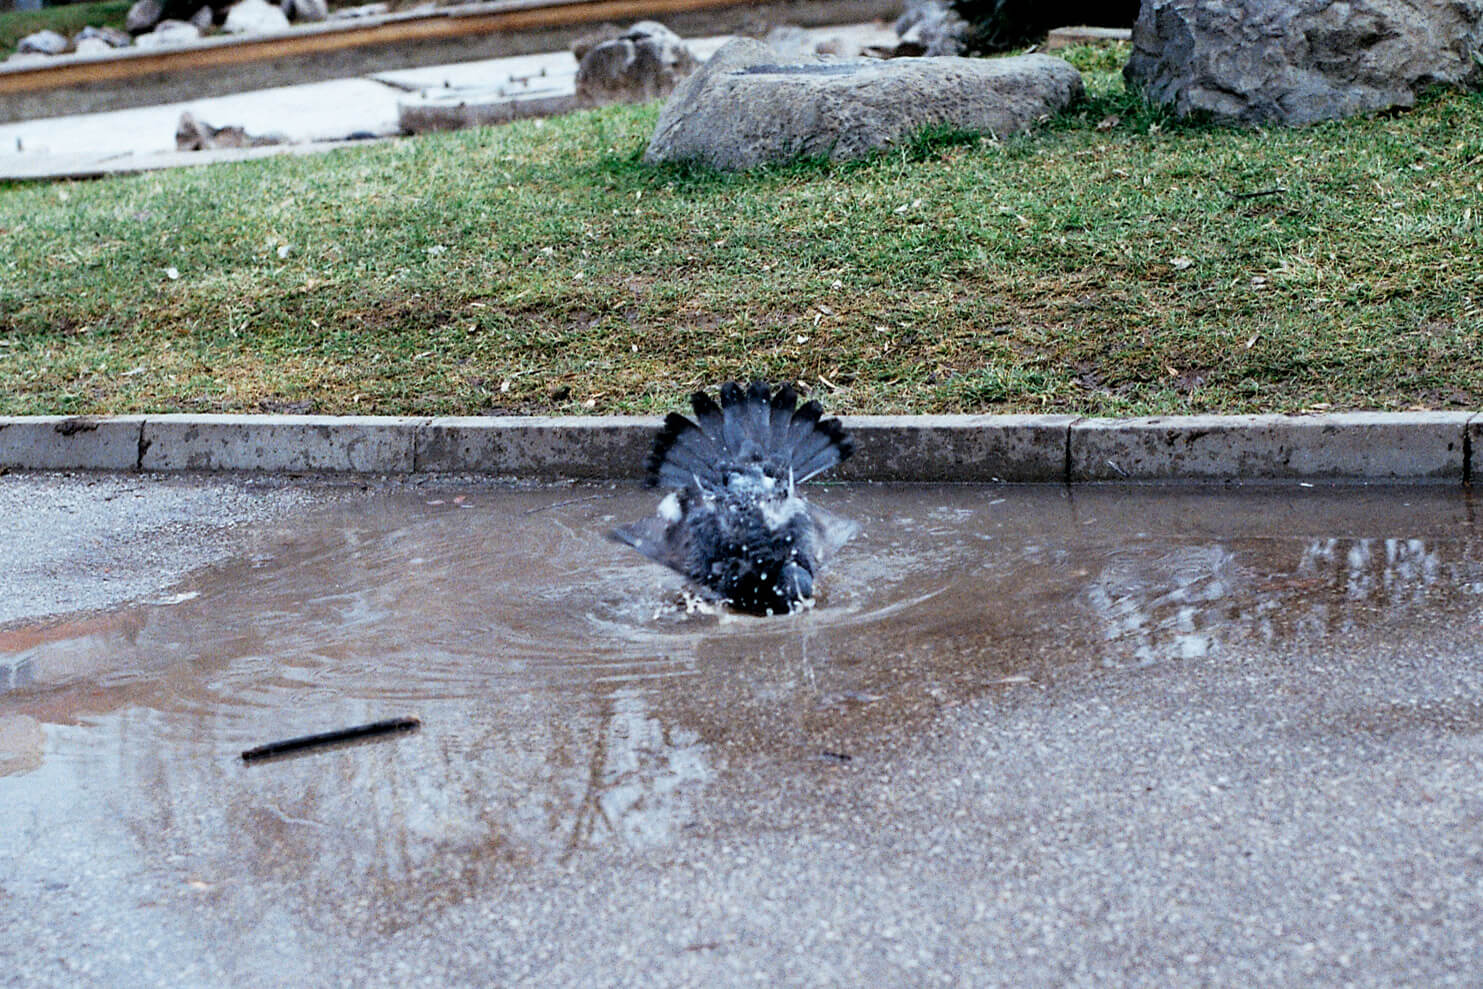 A pidgeon taking a bath